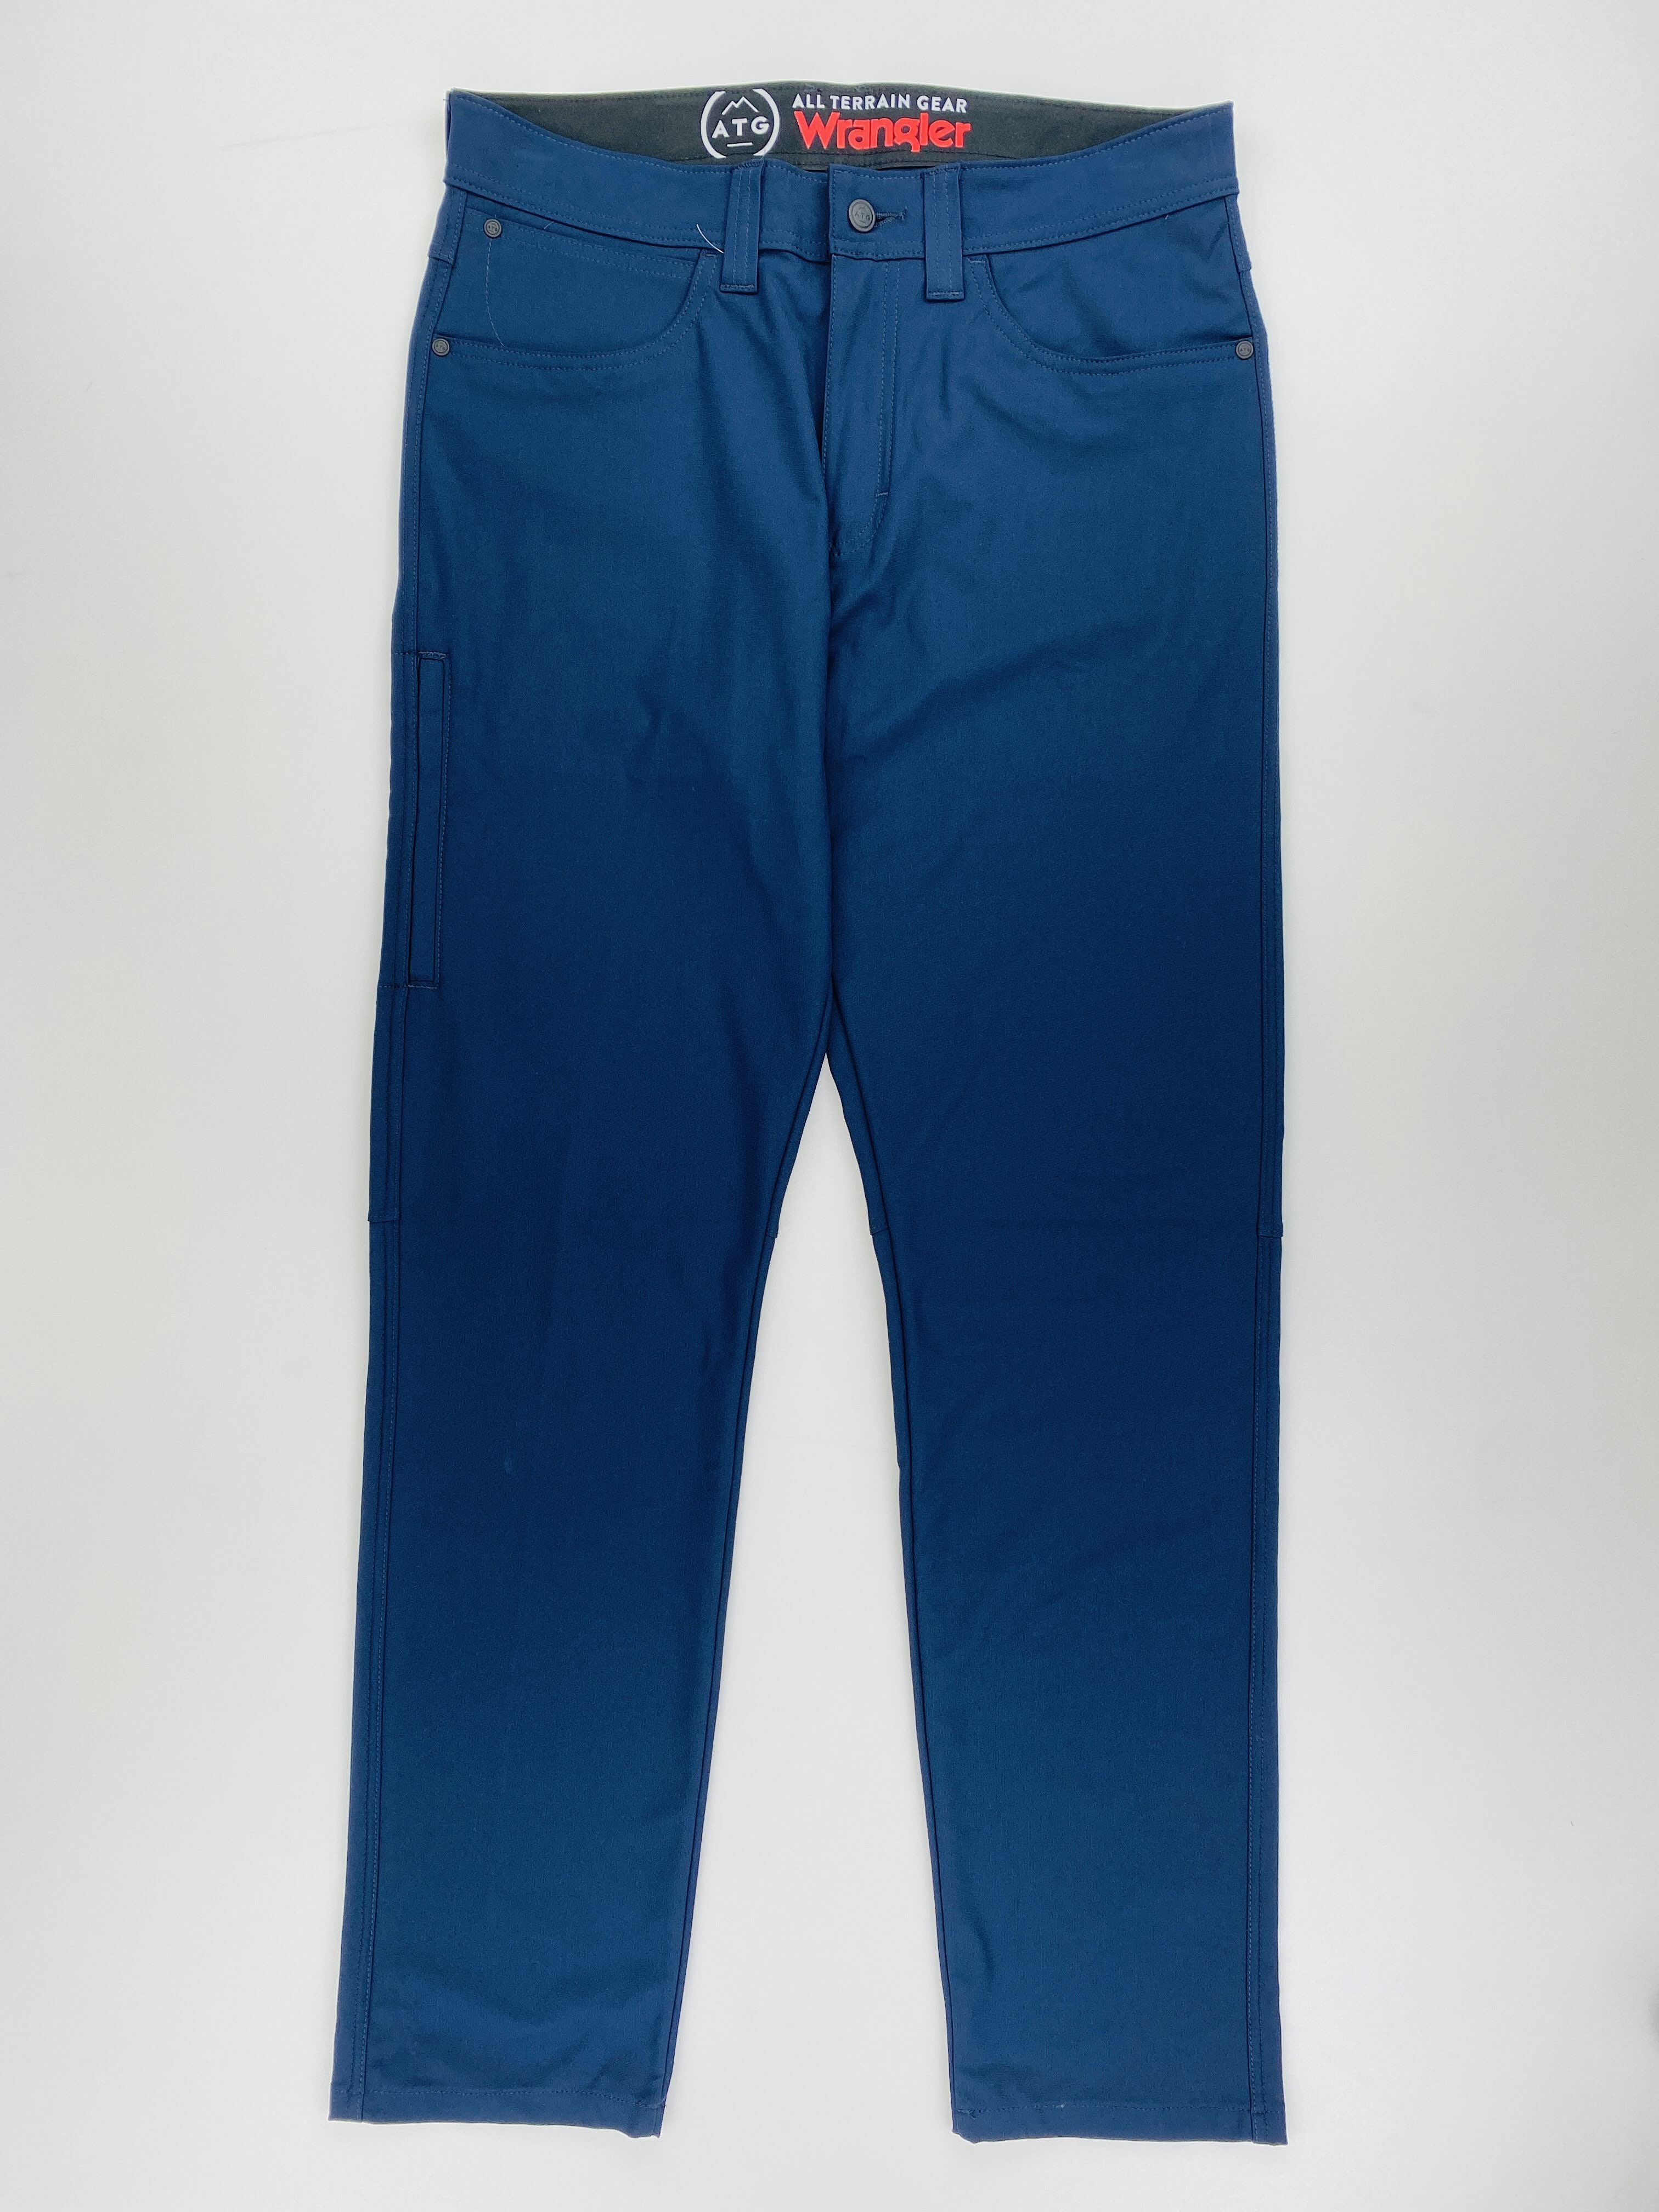 Wrangler Fwds 5 Pocket Pants - Second Hand Pánské turistické kalhoty - Modrý - US 32 | Hardloop